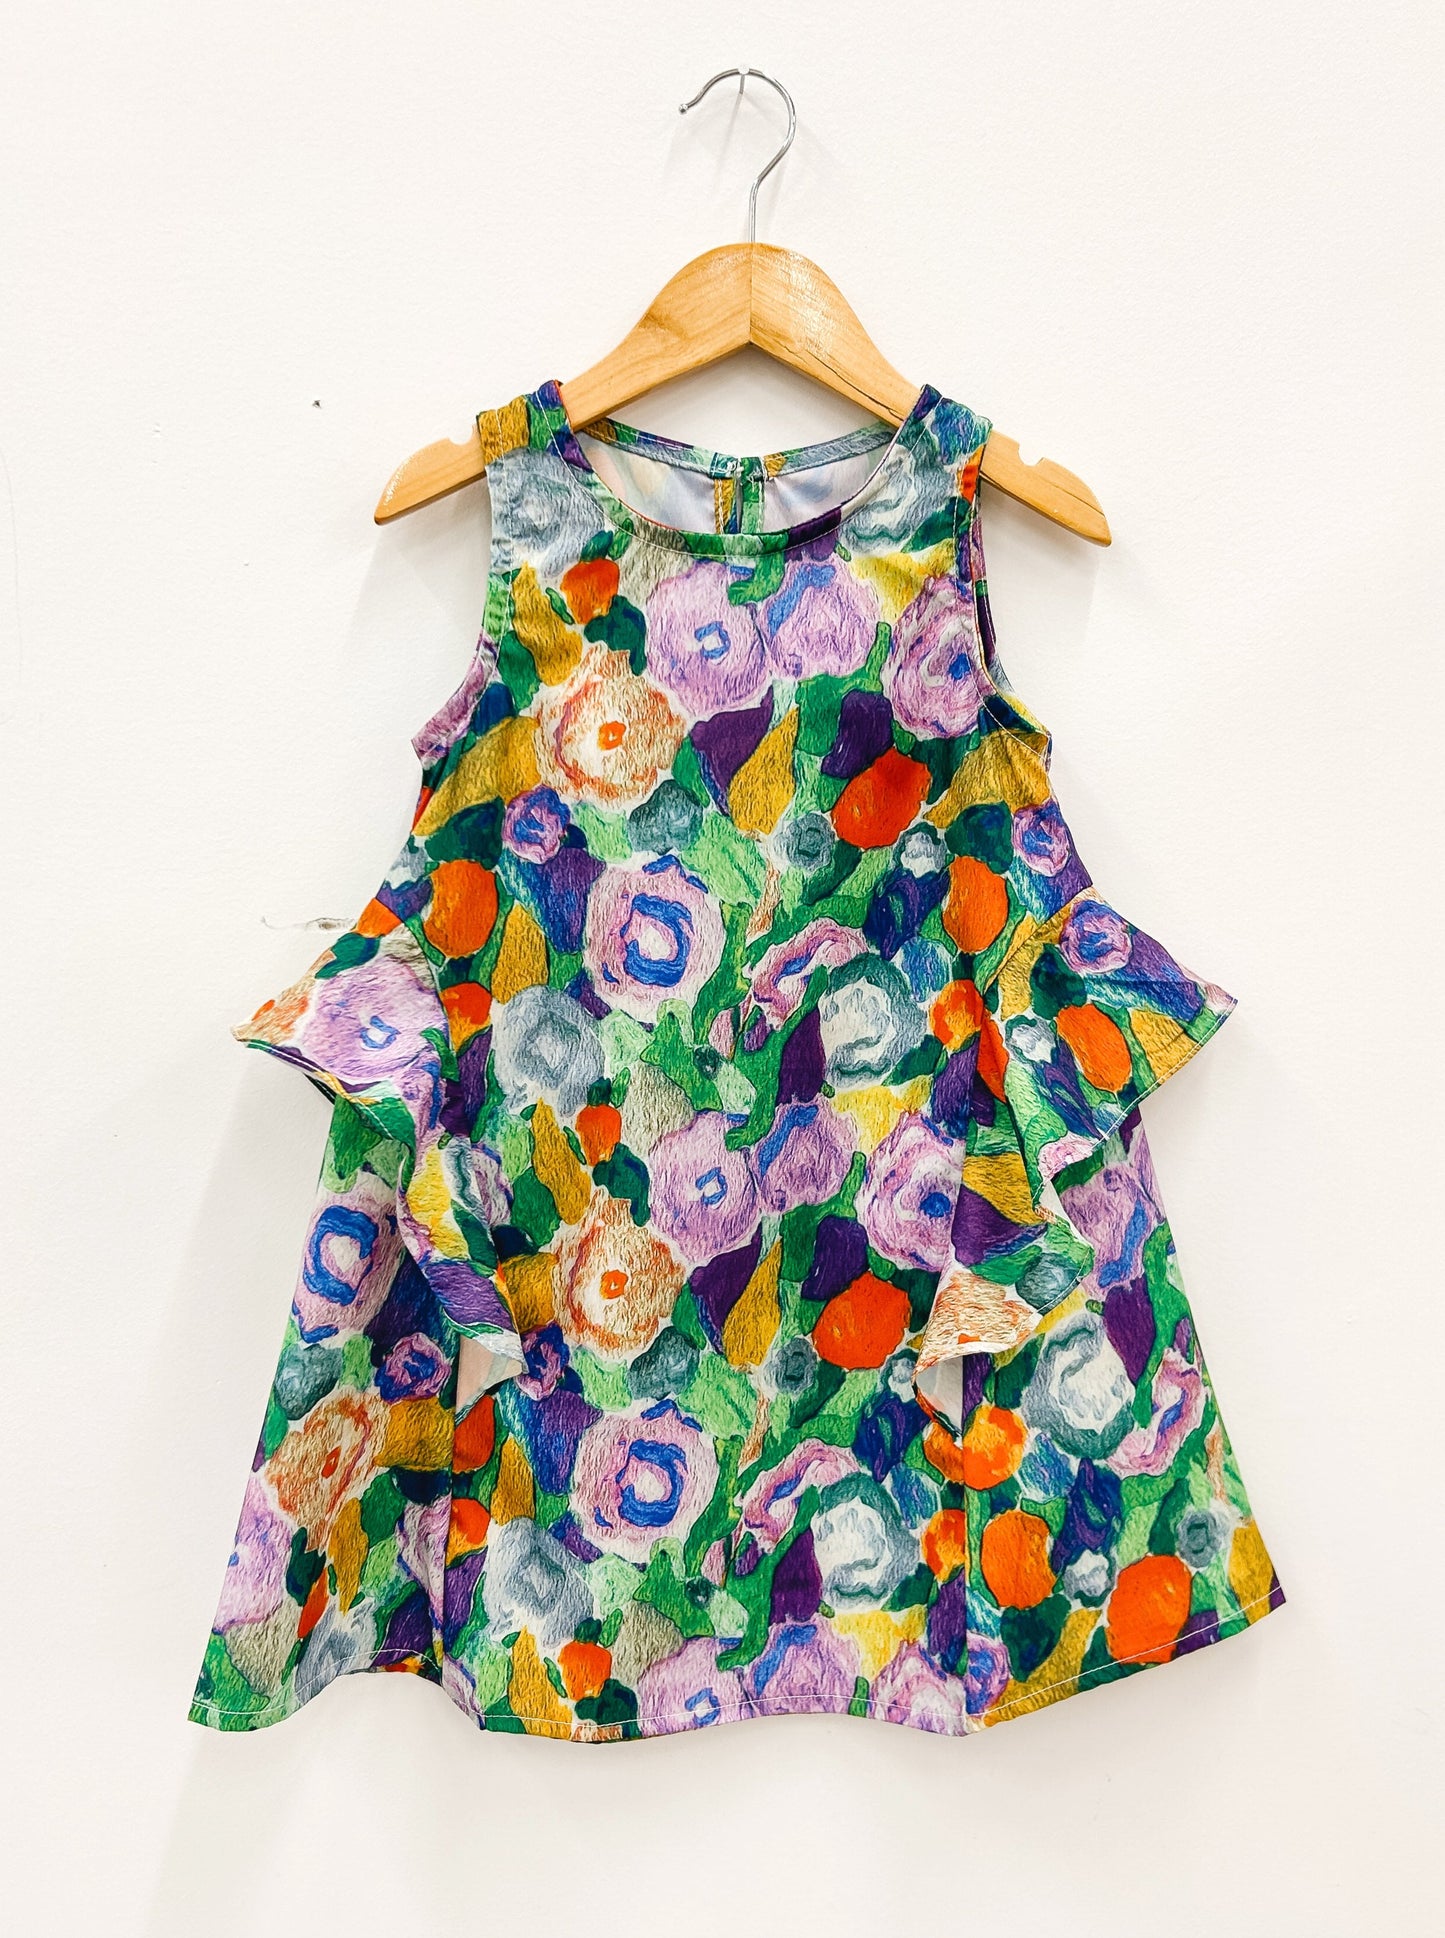 Monet Garden Dress